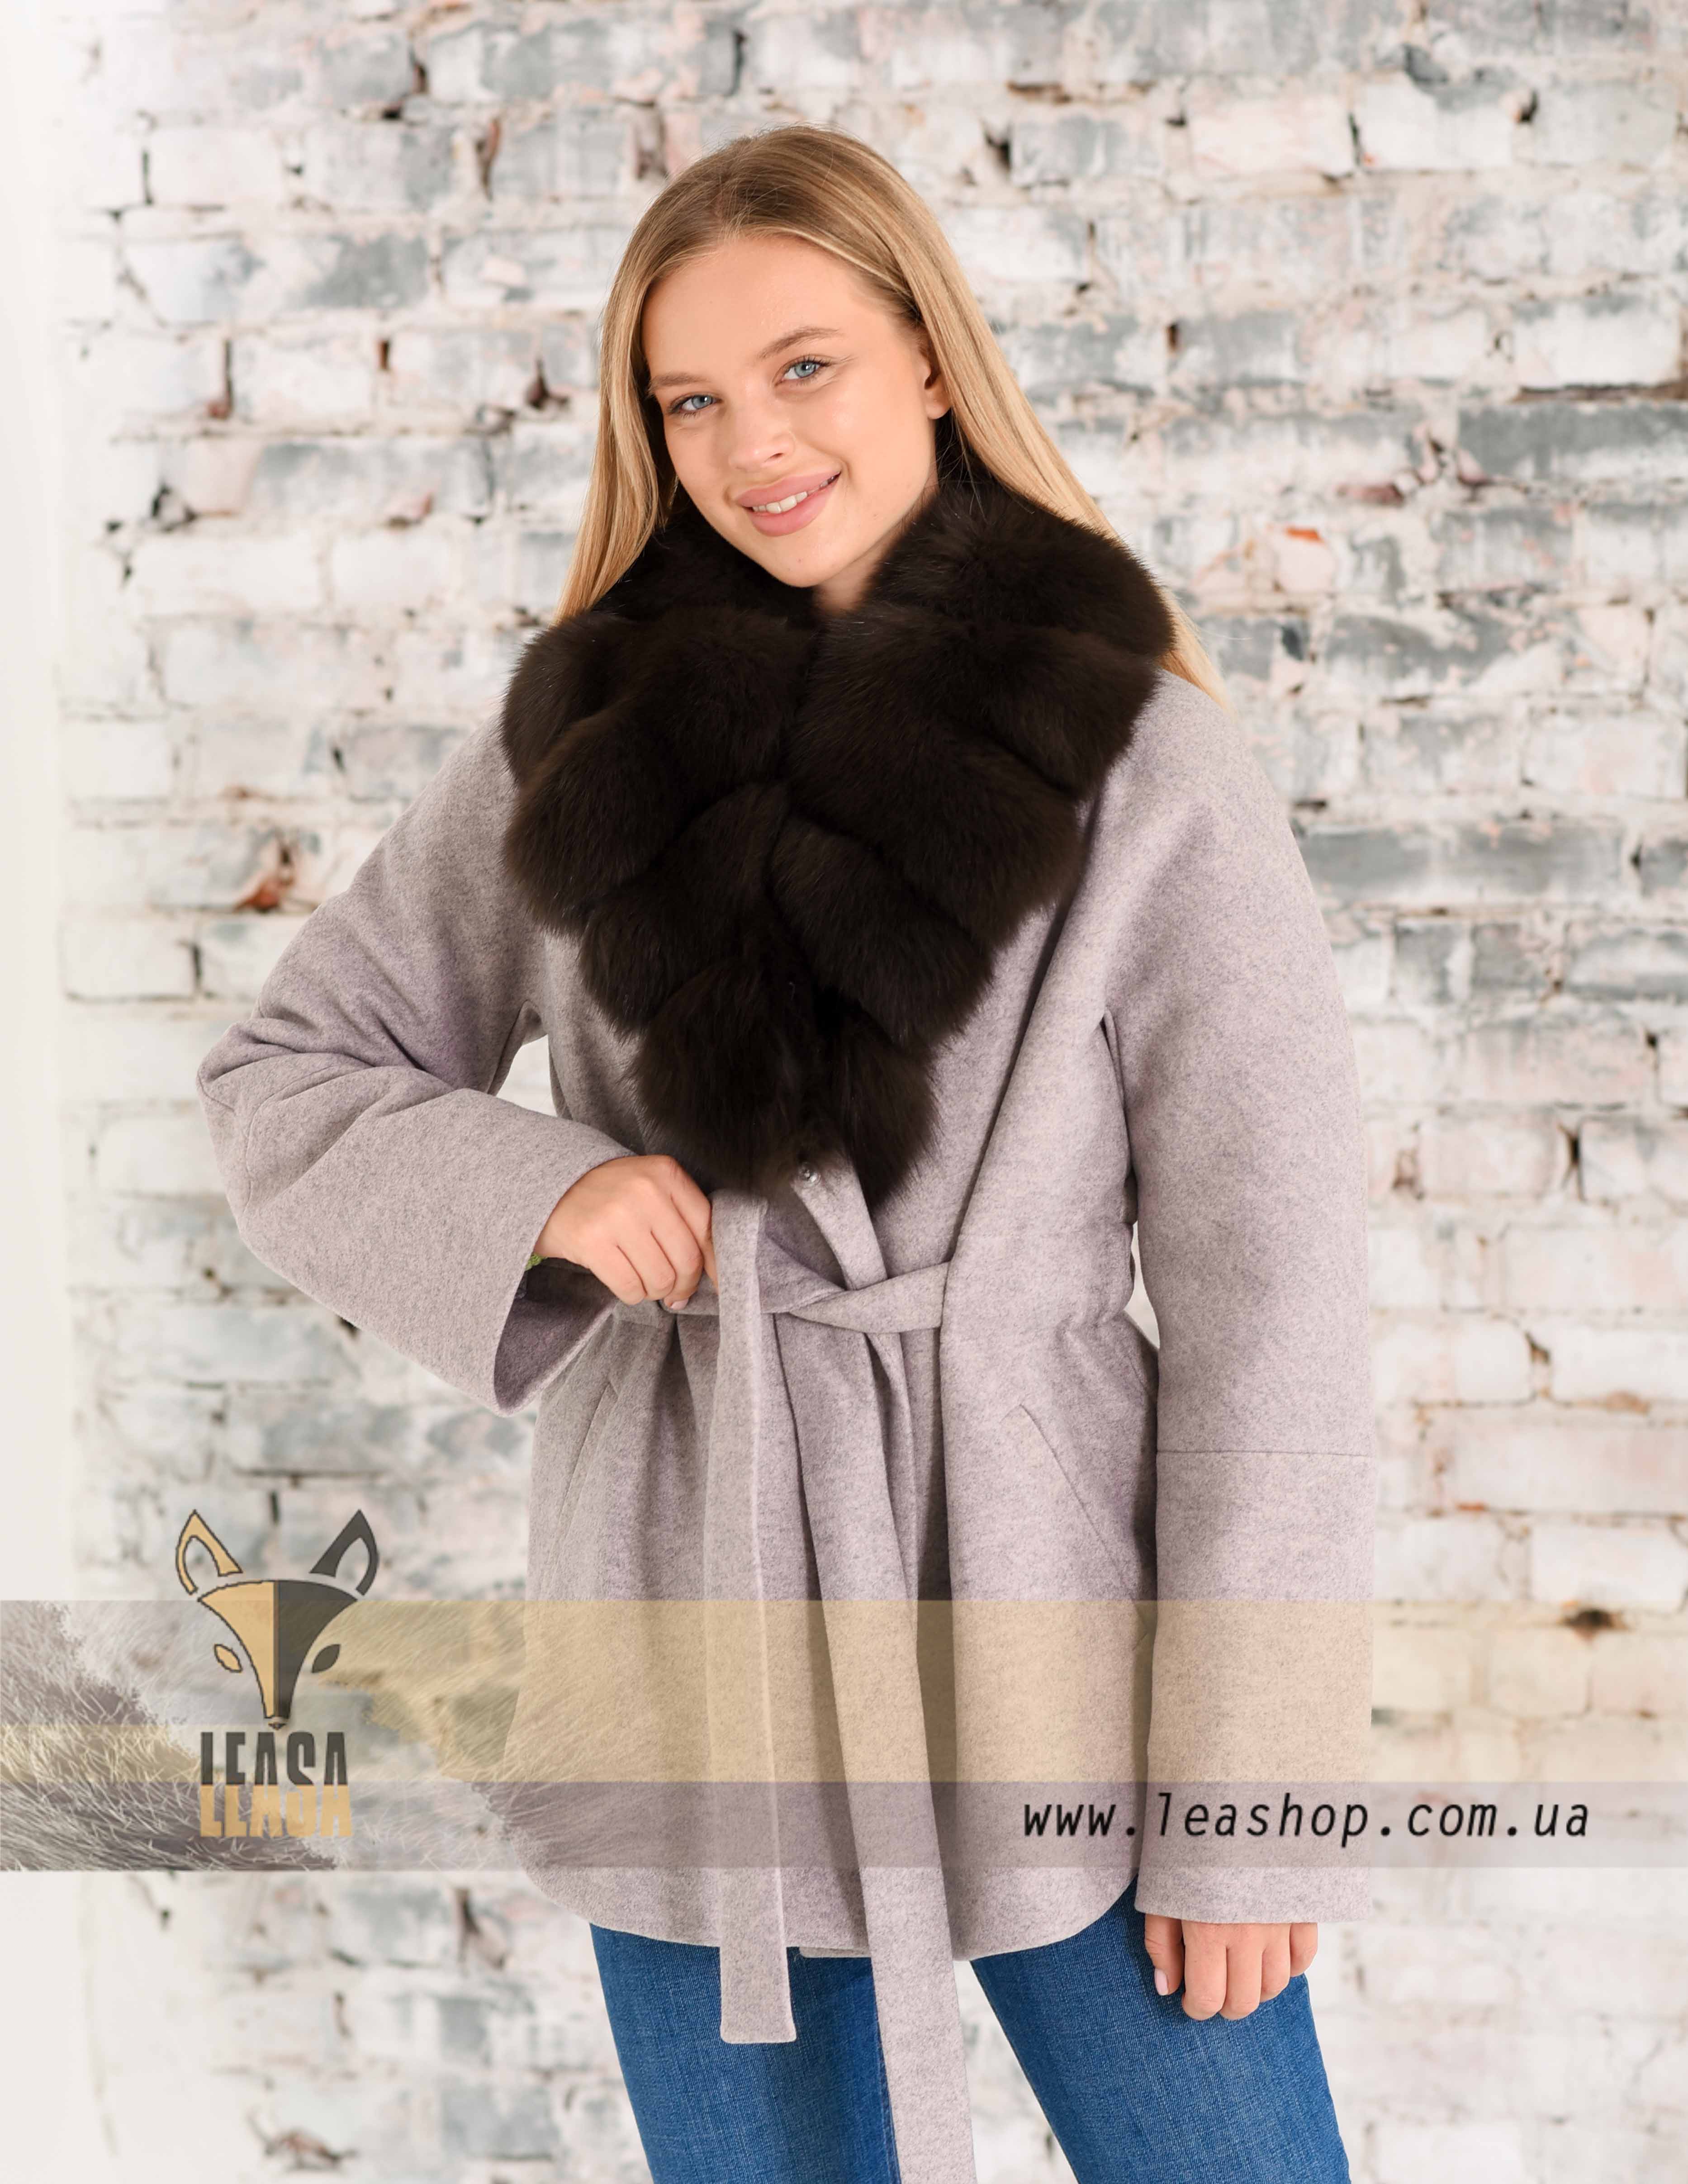 Женское пальто цвета пудра с меховым воротником